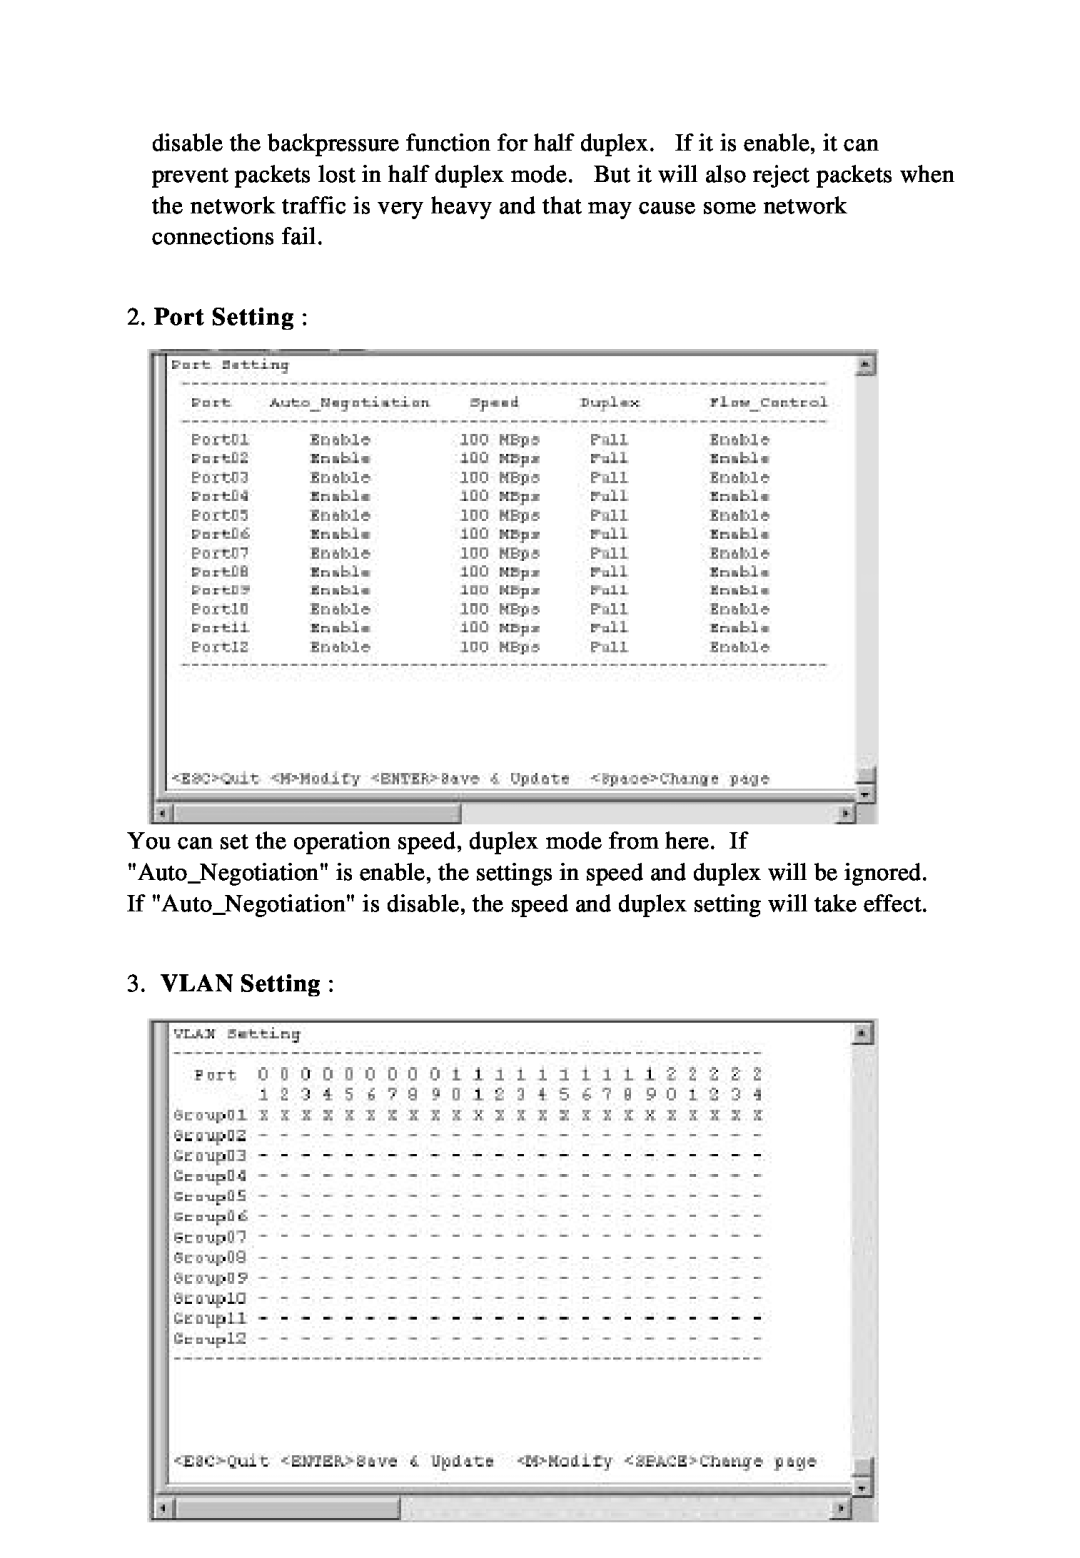 KTI Networks KS-324F manual Port Setting, VLAN Setting 